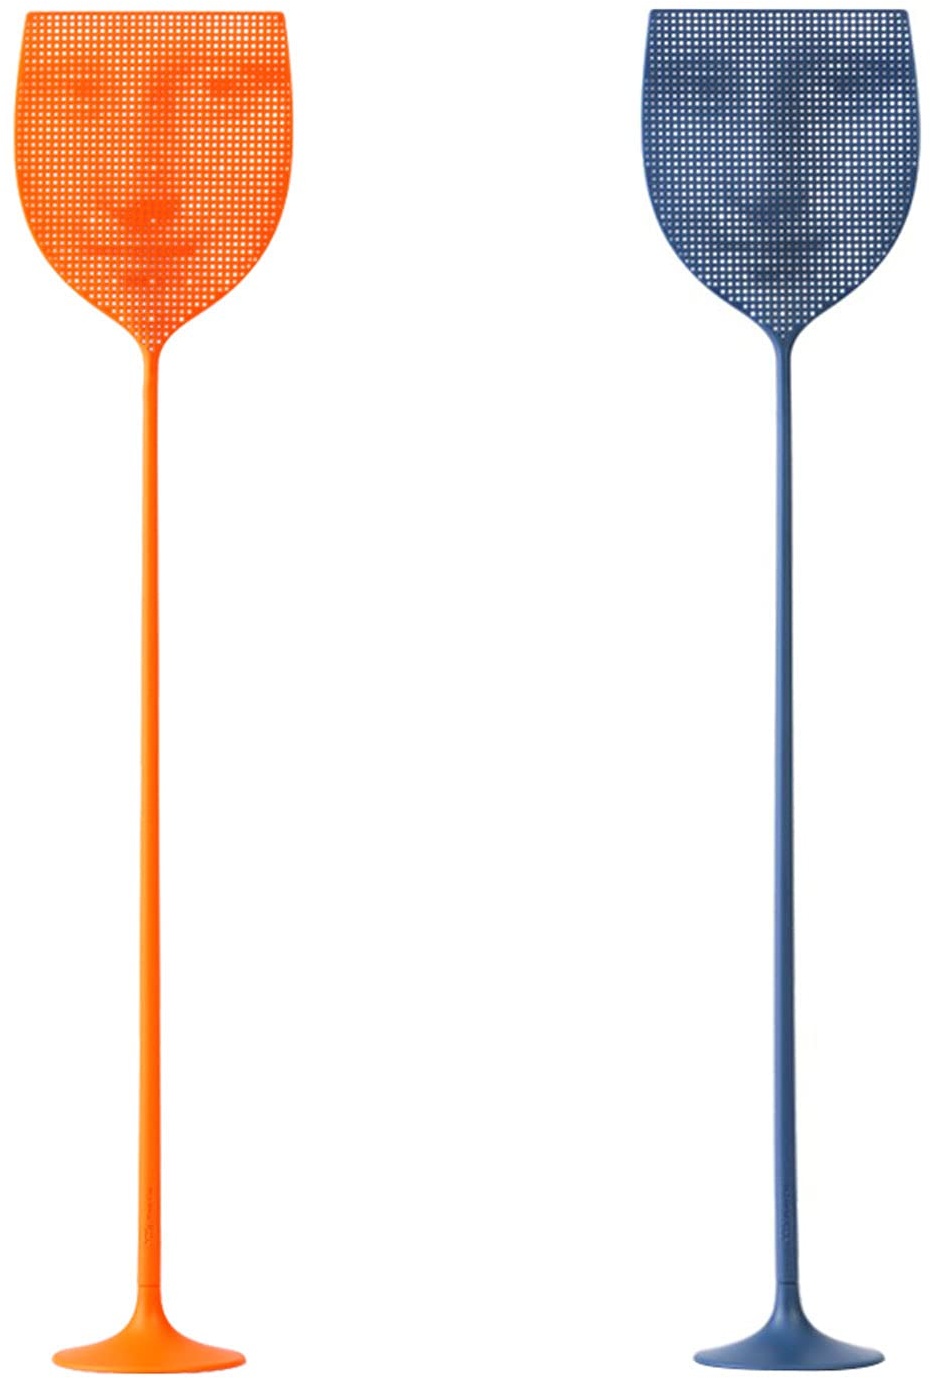 PUPL Fliegenklatsche | Mona Lisa Flyswatter | Super langer abnehmbarer Griff | Monalisa Portrait künstlerisches Design | Indoor / Outdoor – Fliegenklatsche (3 Farben) (Grau & Orange)